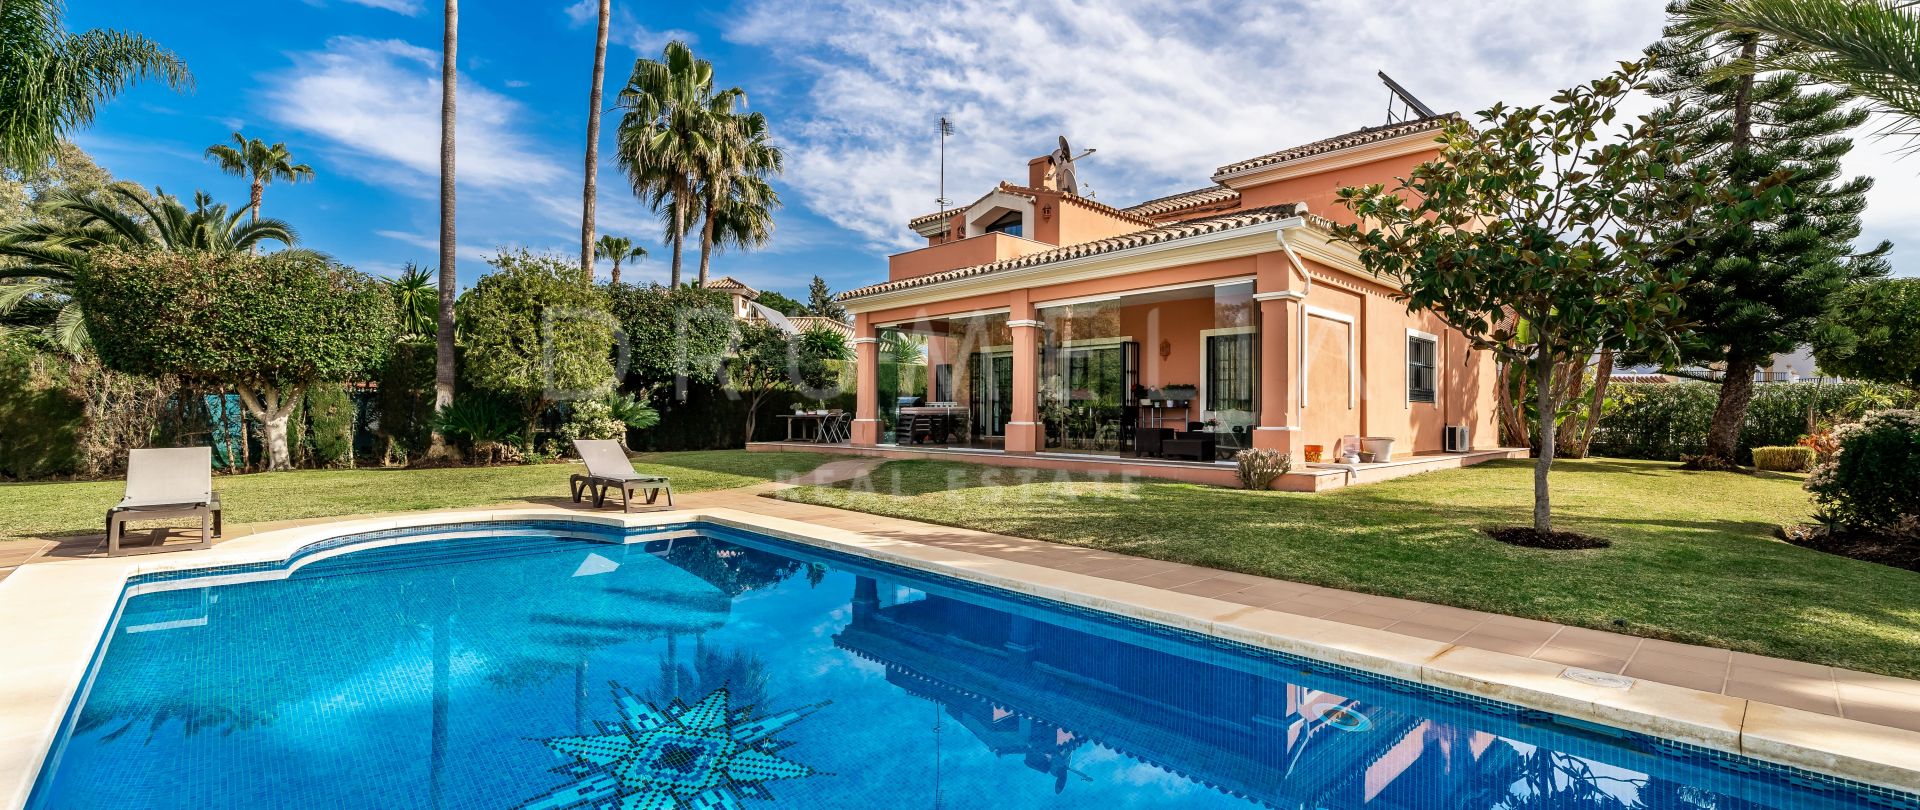 Belle villa de luxe de style méditerranéen dans la charmante région d'Atalaya, Estepona